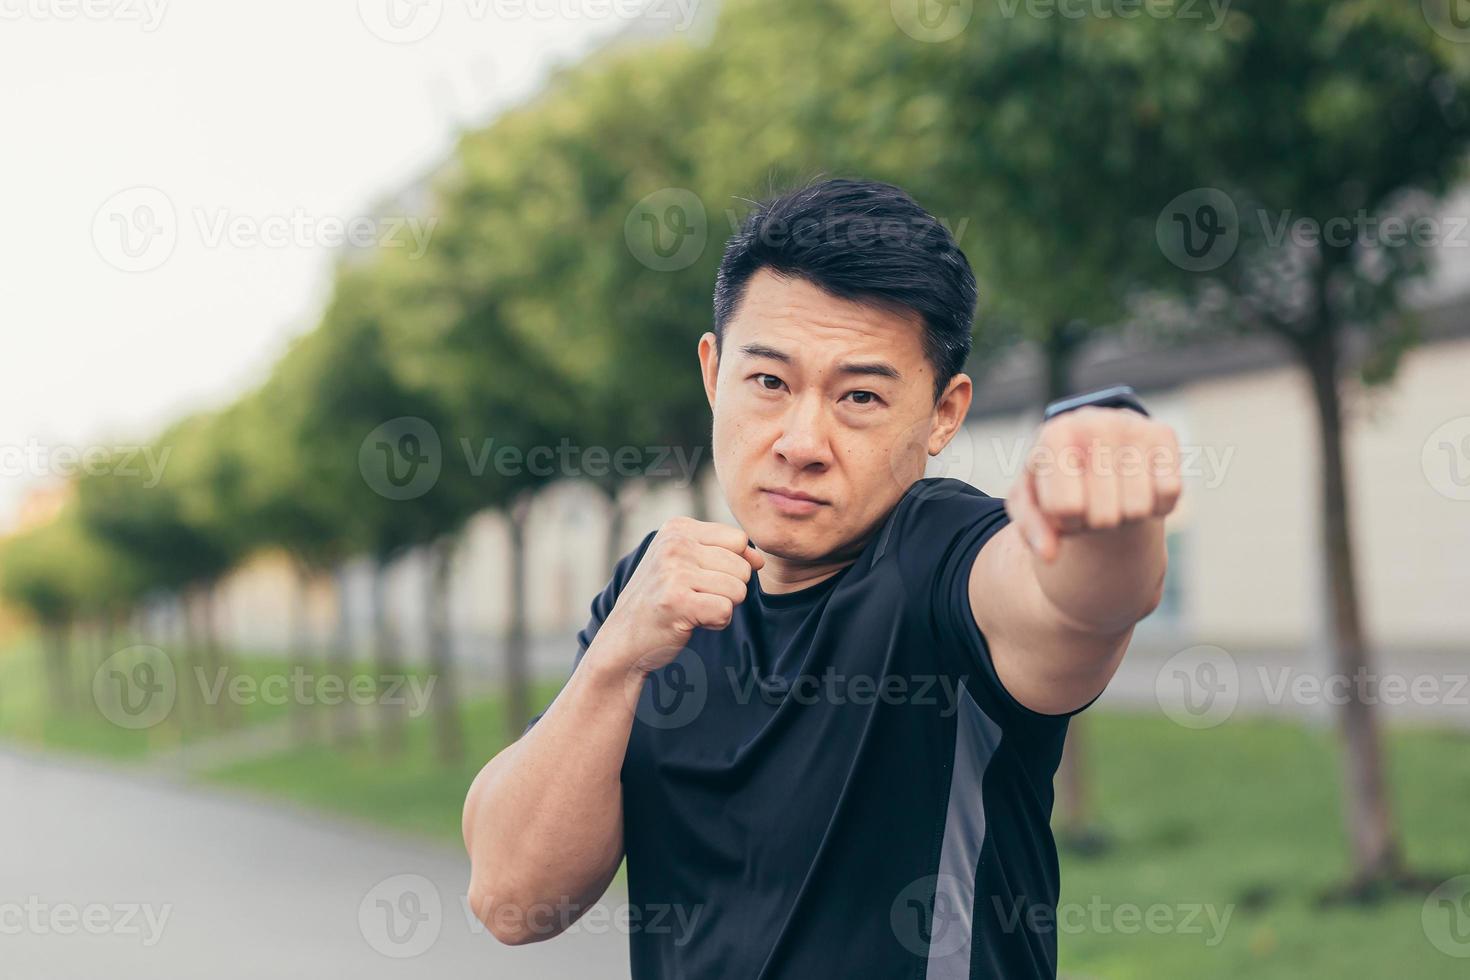 männlicher asiatischer athlet demonstriert boxständer beim morgendlichen joggen und fitness foto